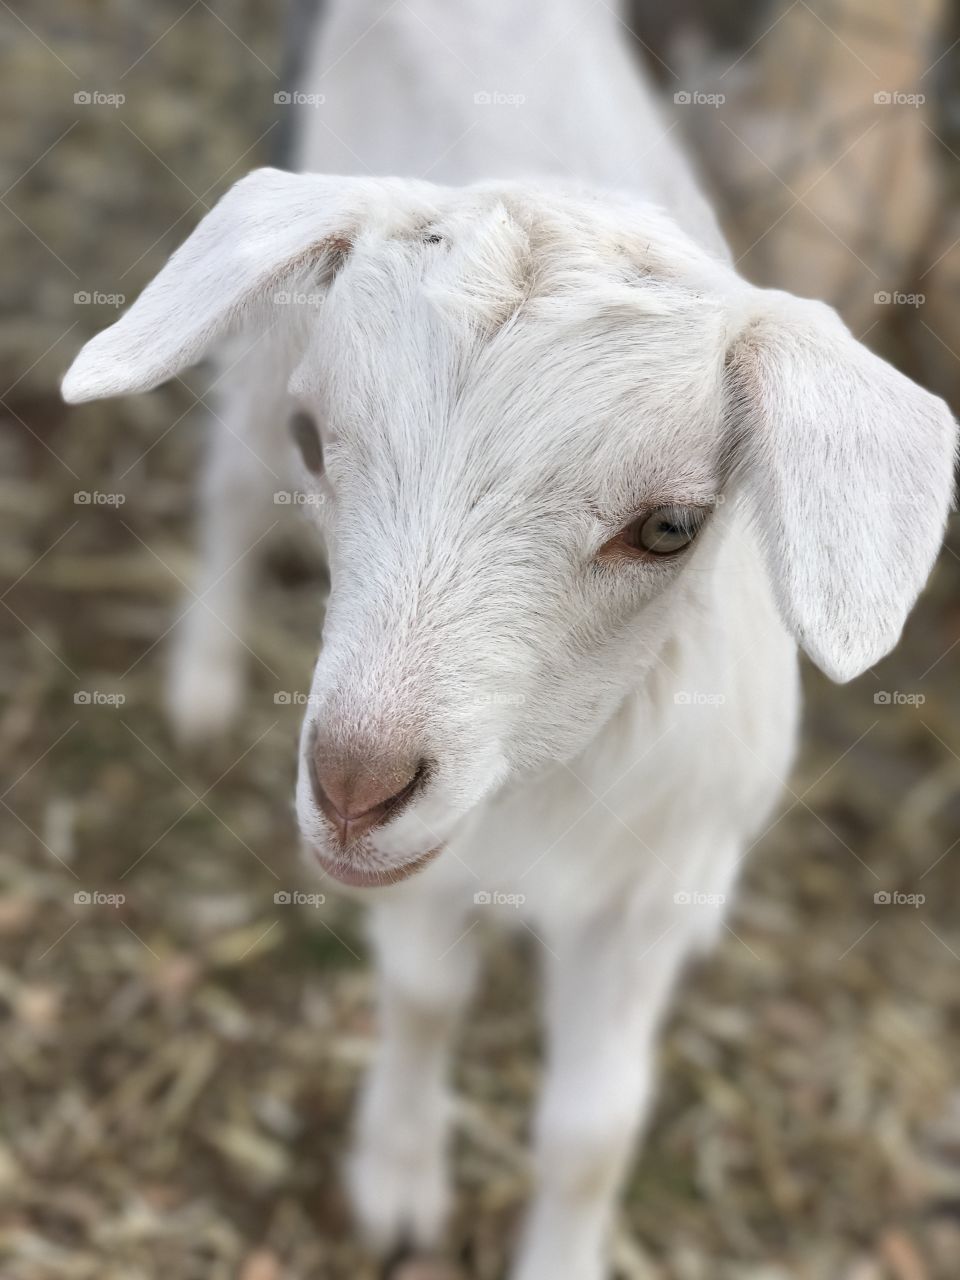 Baby goat. 